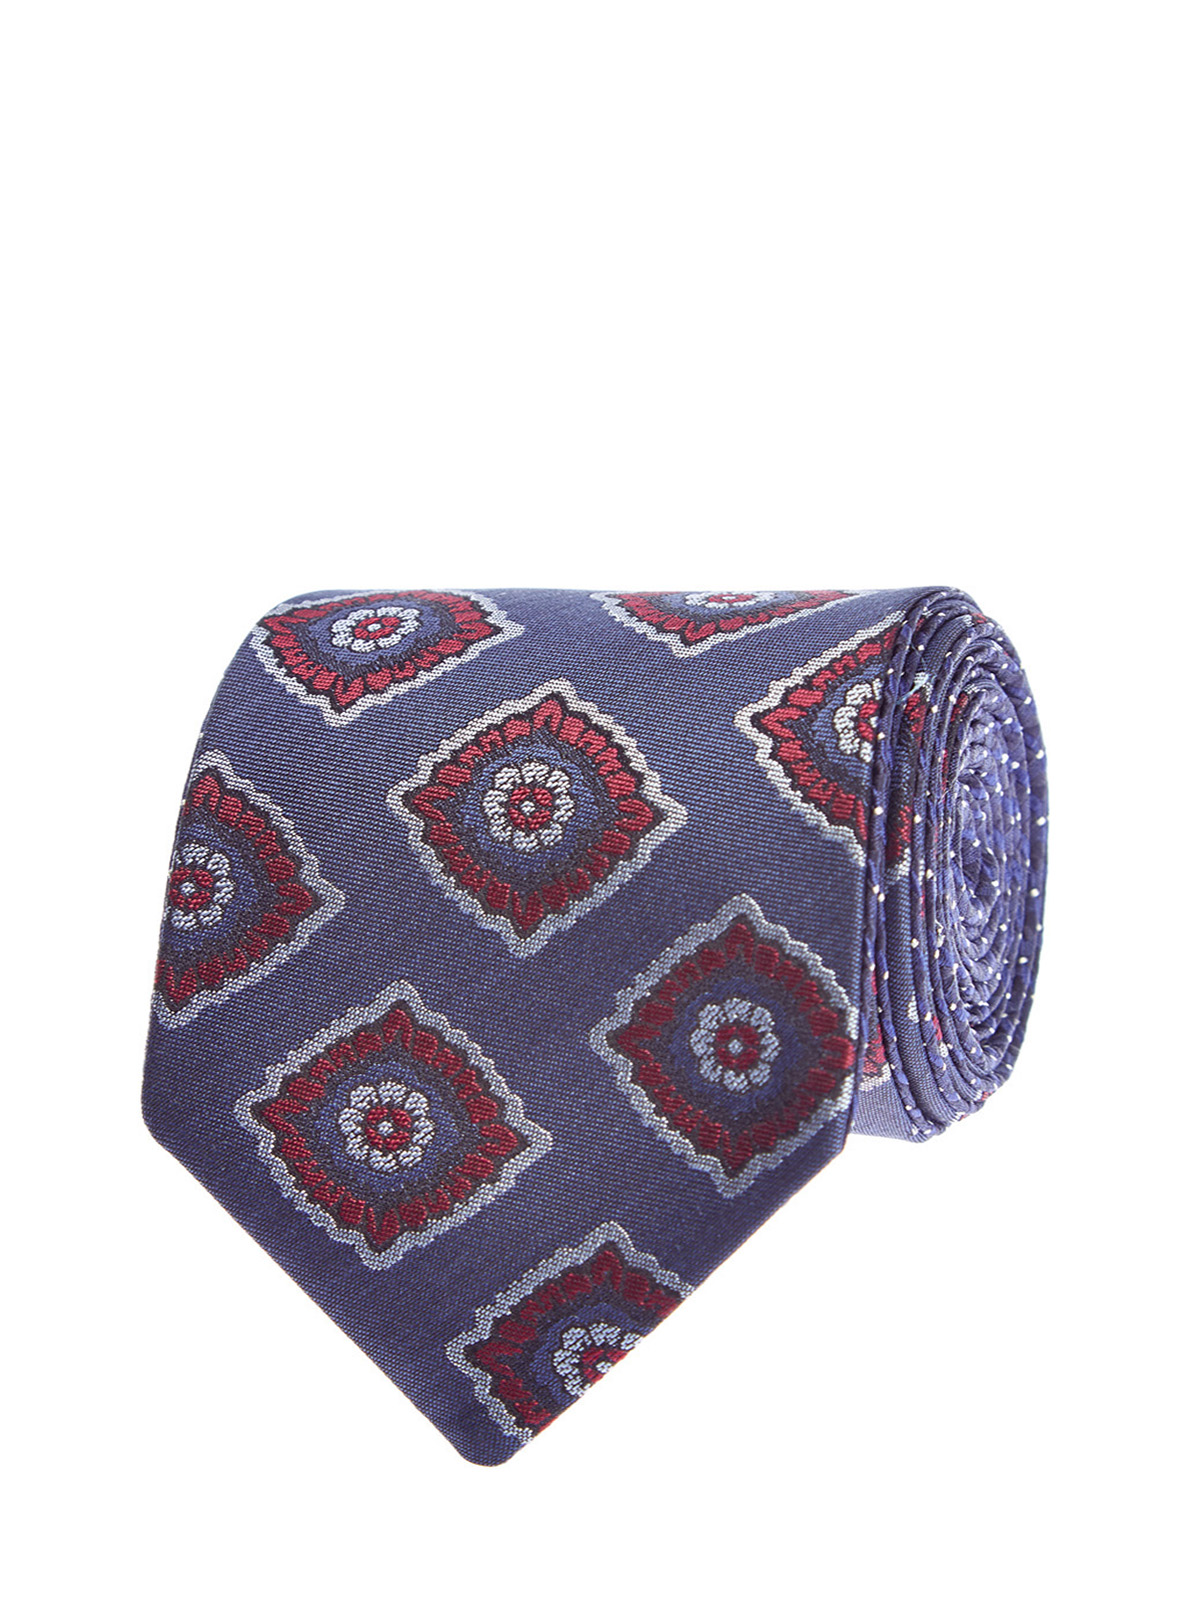 Шелковый галстук с потайной отделкой в строгом стиле CANALI, цвет мульти, размер 40;41;42;43;44;45 - фото 1